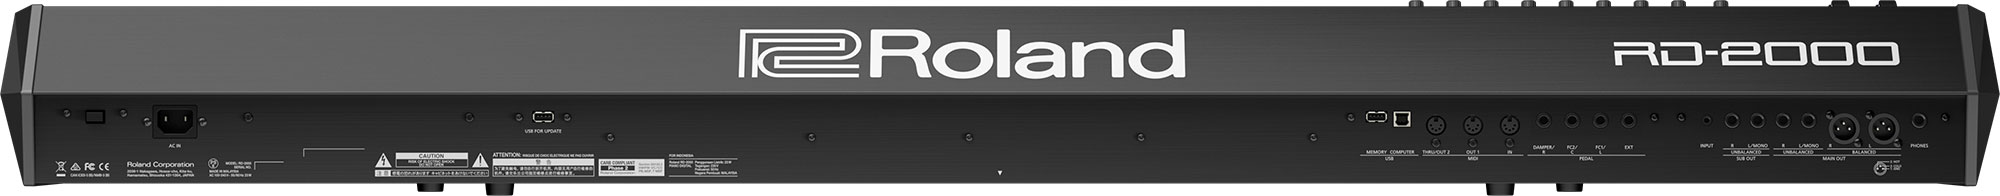 Roland RD-2000.2